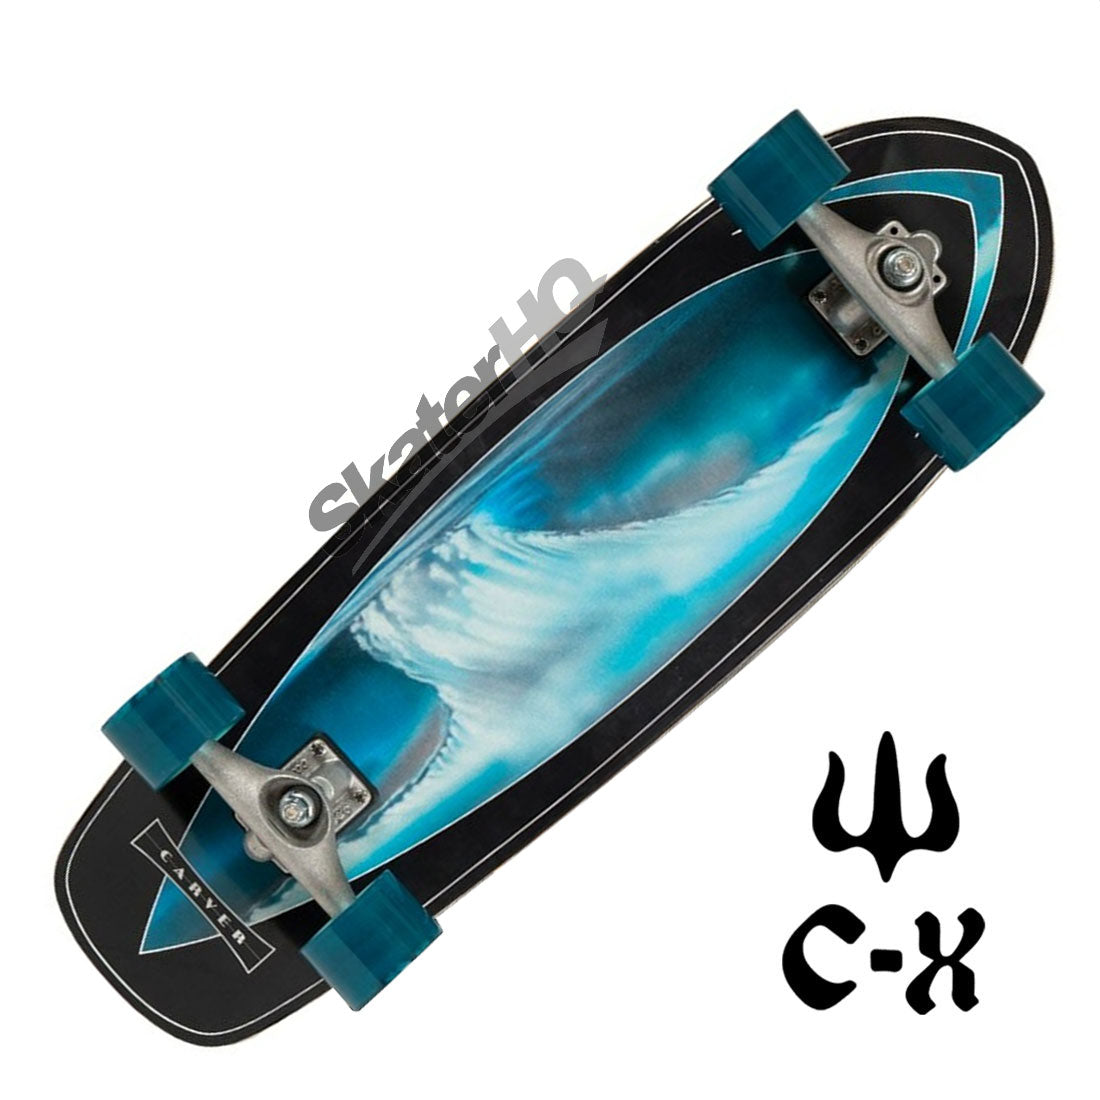 Surfskate Carver Super Snapper CX